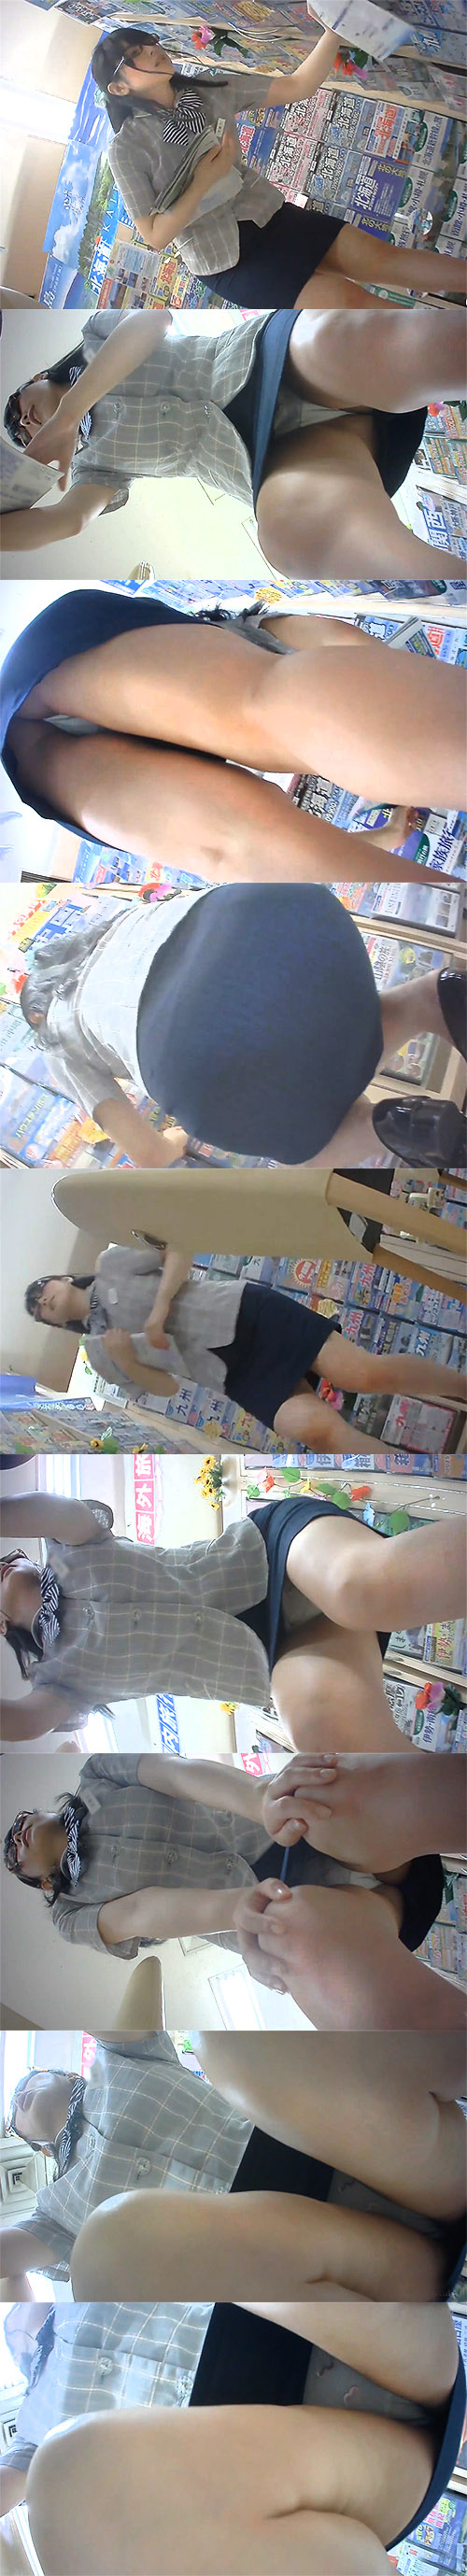 【旅行代理店-2】タイトスカートの店員さんの相談中のスカートの中にカメラを突っ込んできた? ダウンロード